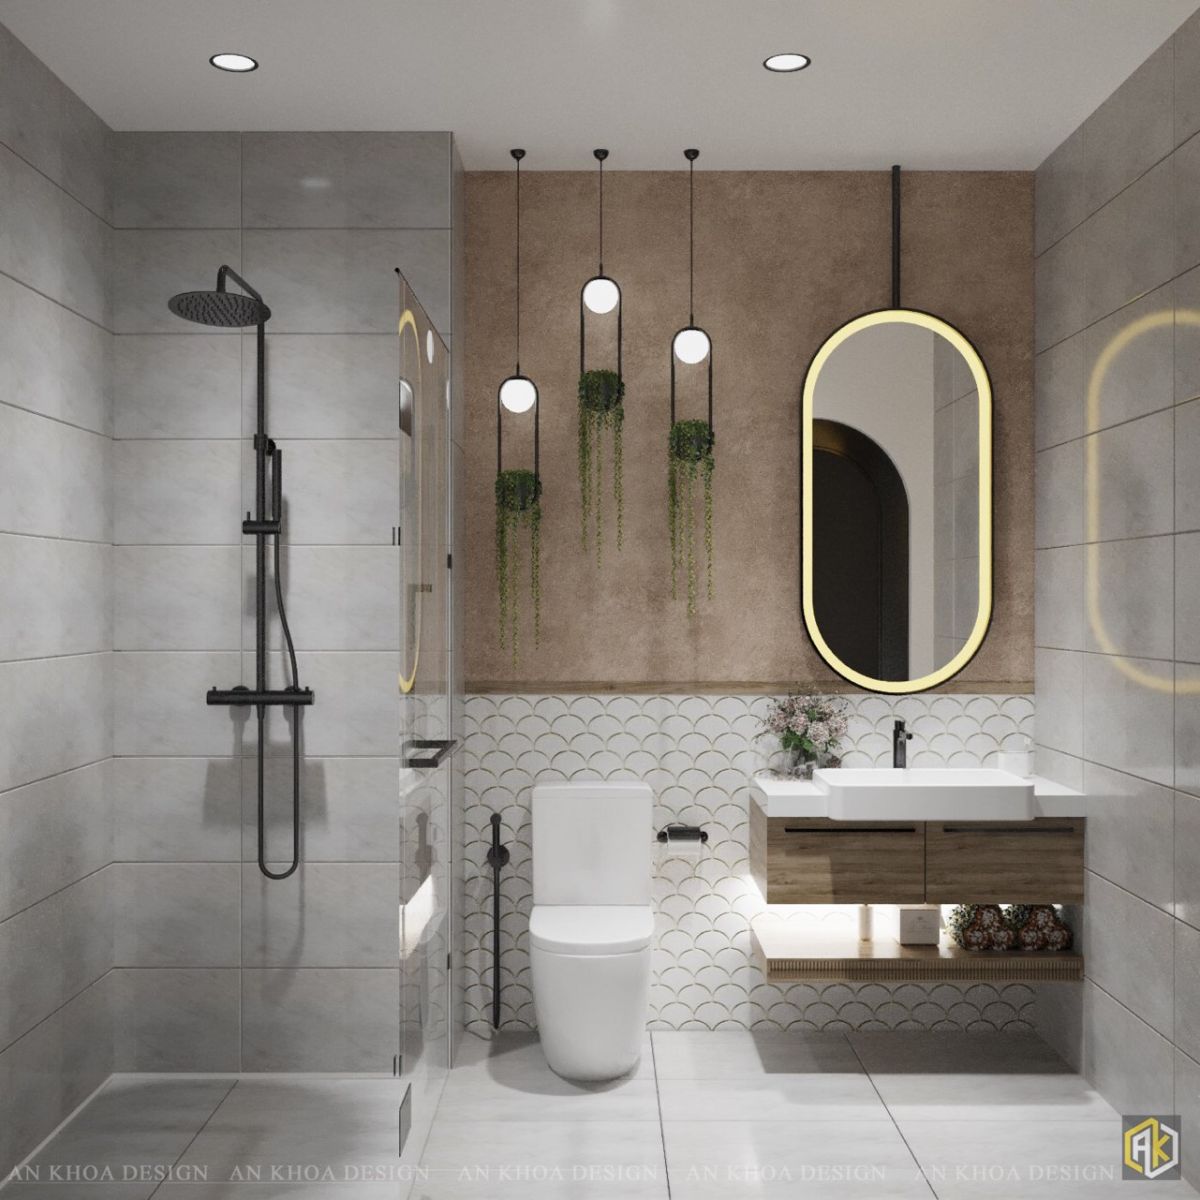 Chọn thiết kế nội thất nhà vệ sinh phù hợp với nhu cầu và sở thích